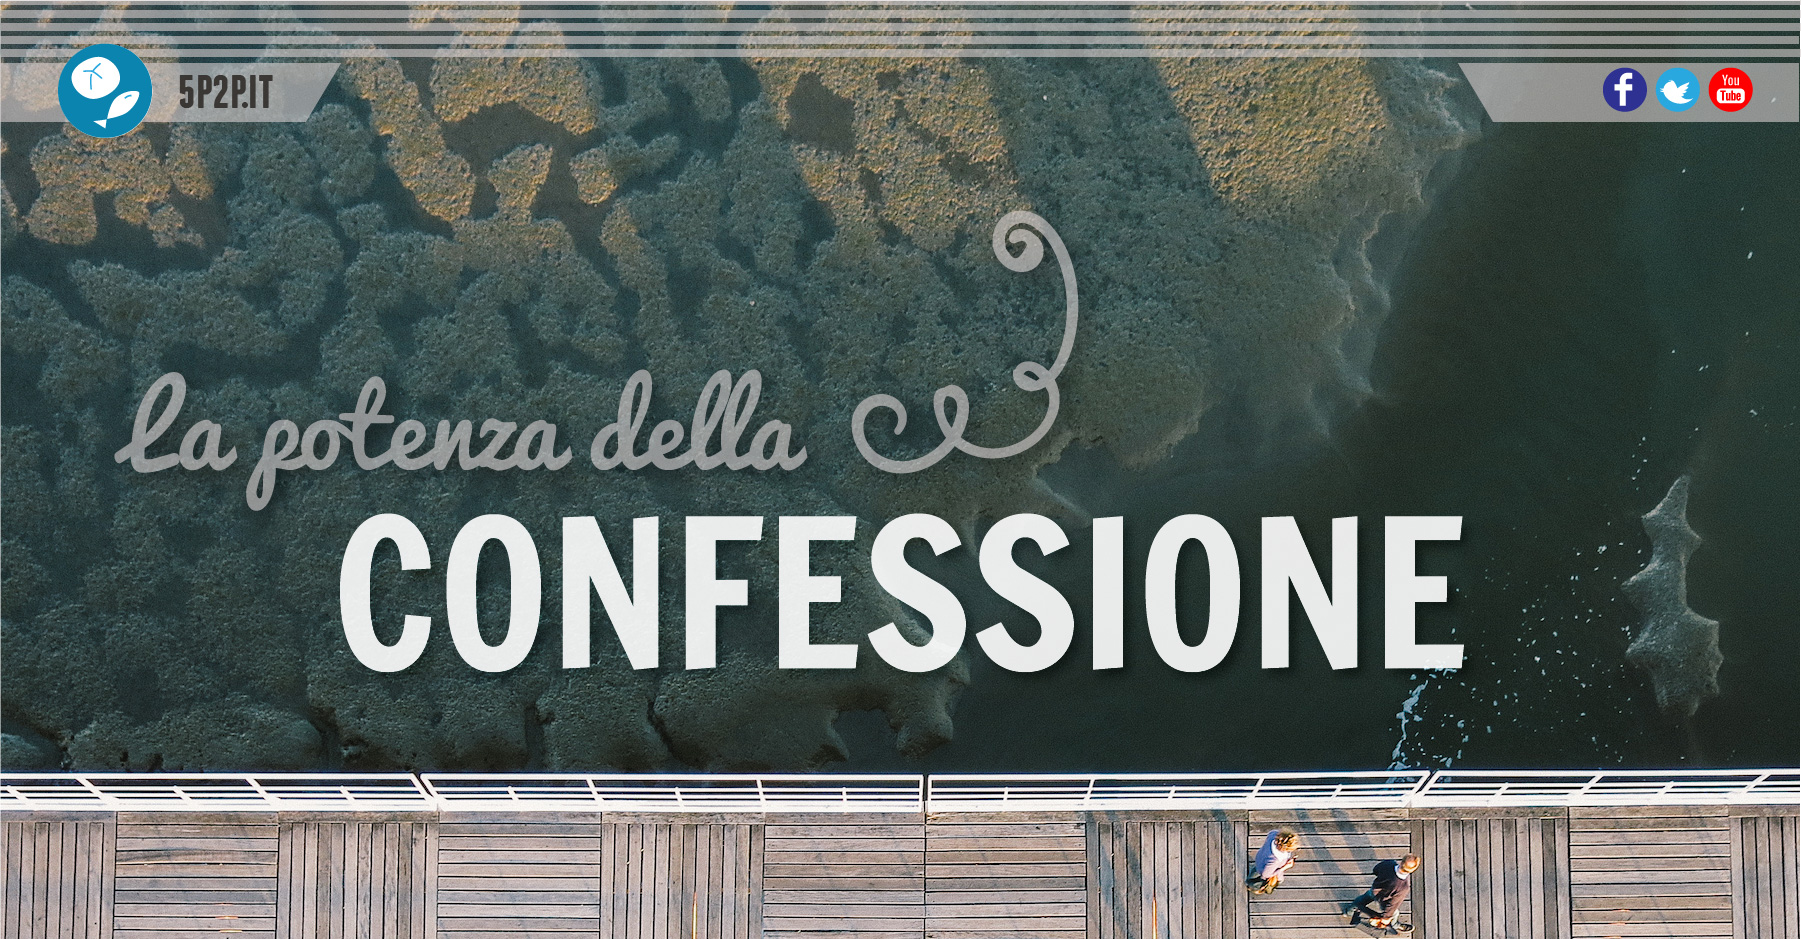 La potenza della confessione